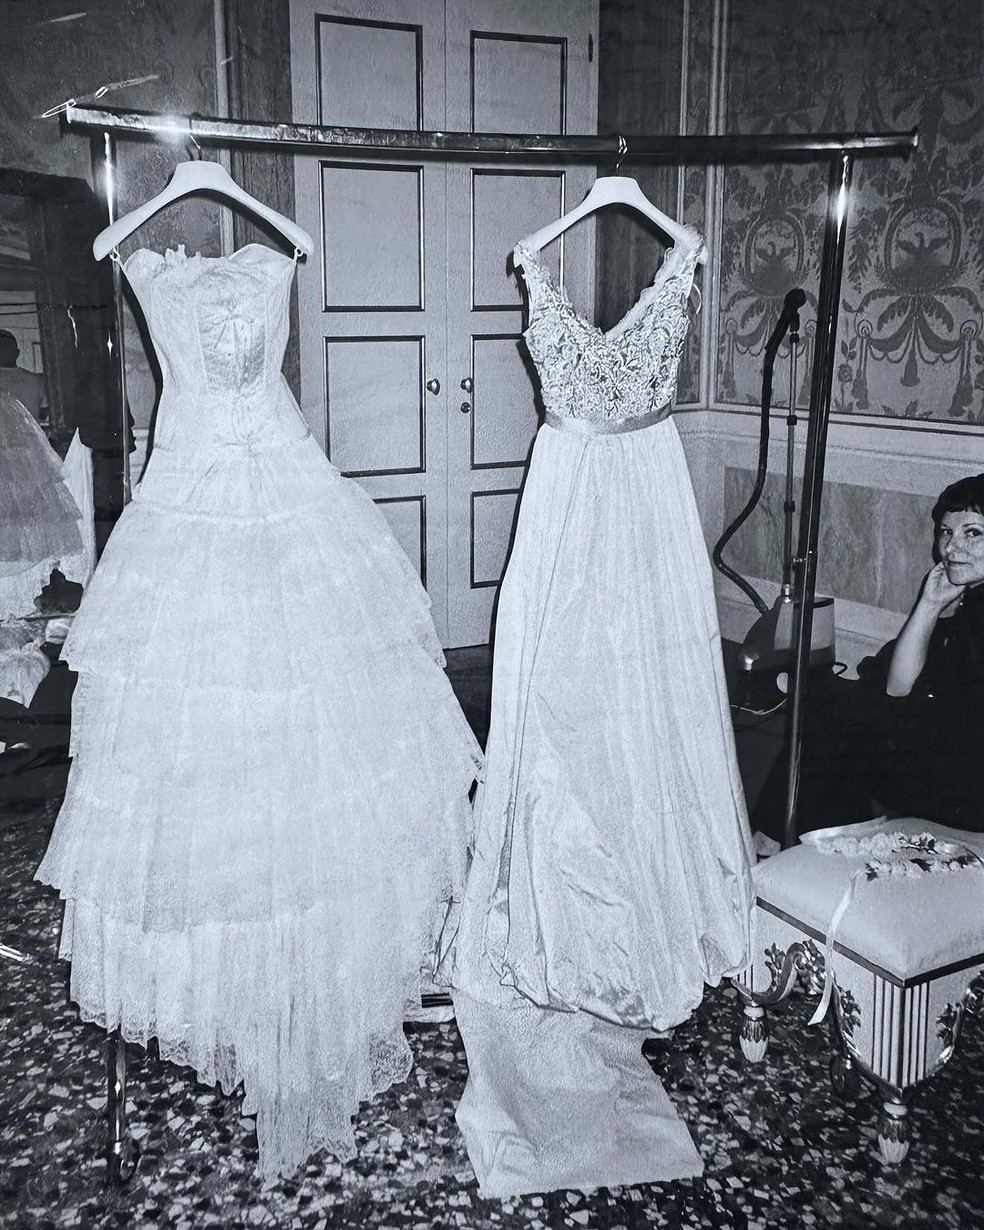 Vestidos de Salma Hayek nos bastidores de seu casamento com François-Henri Pinault — Foto: Reprodução/Instagram